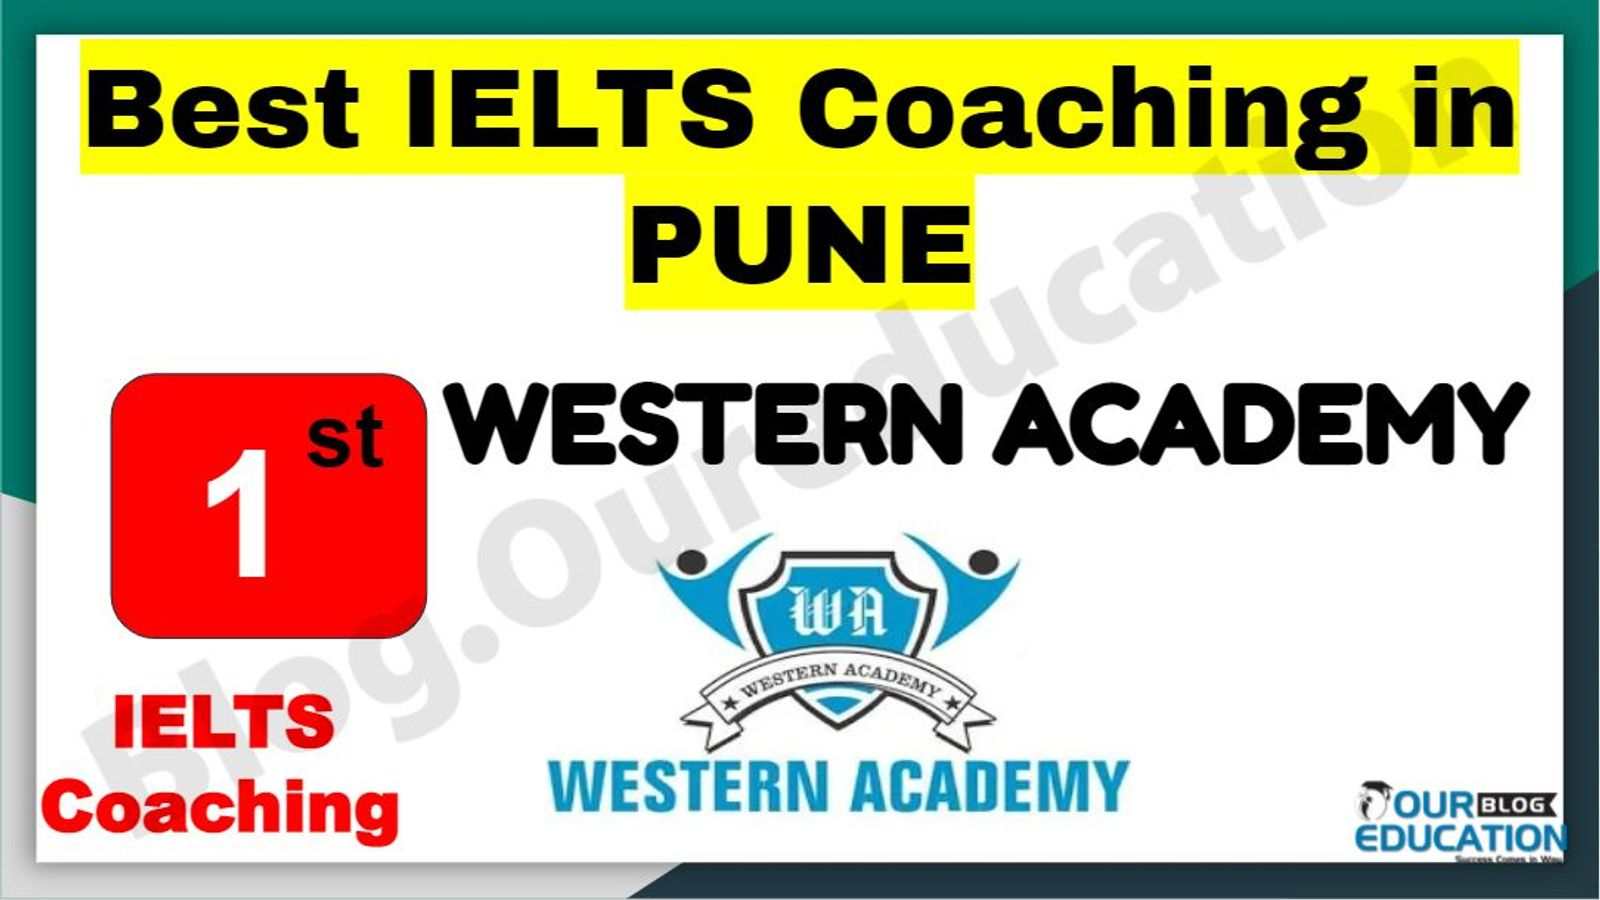 Rank 1 Best IELTS Coaching in Pune